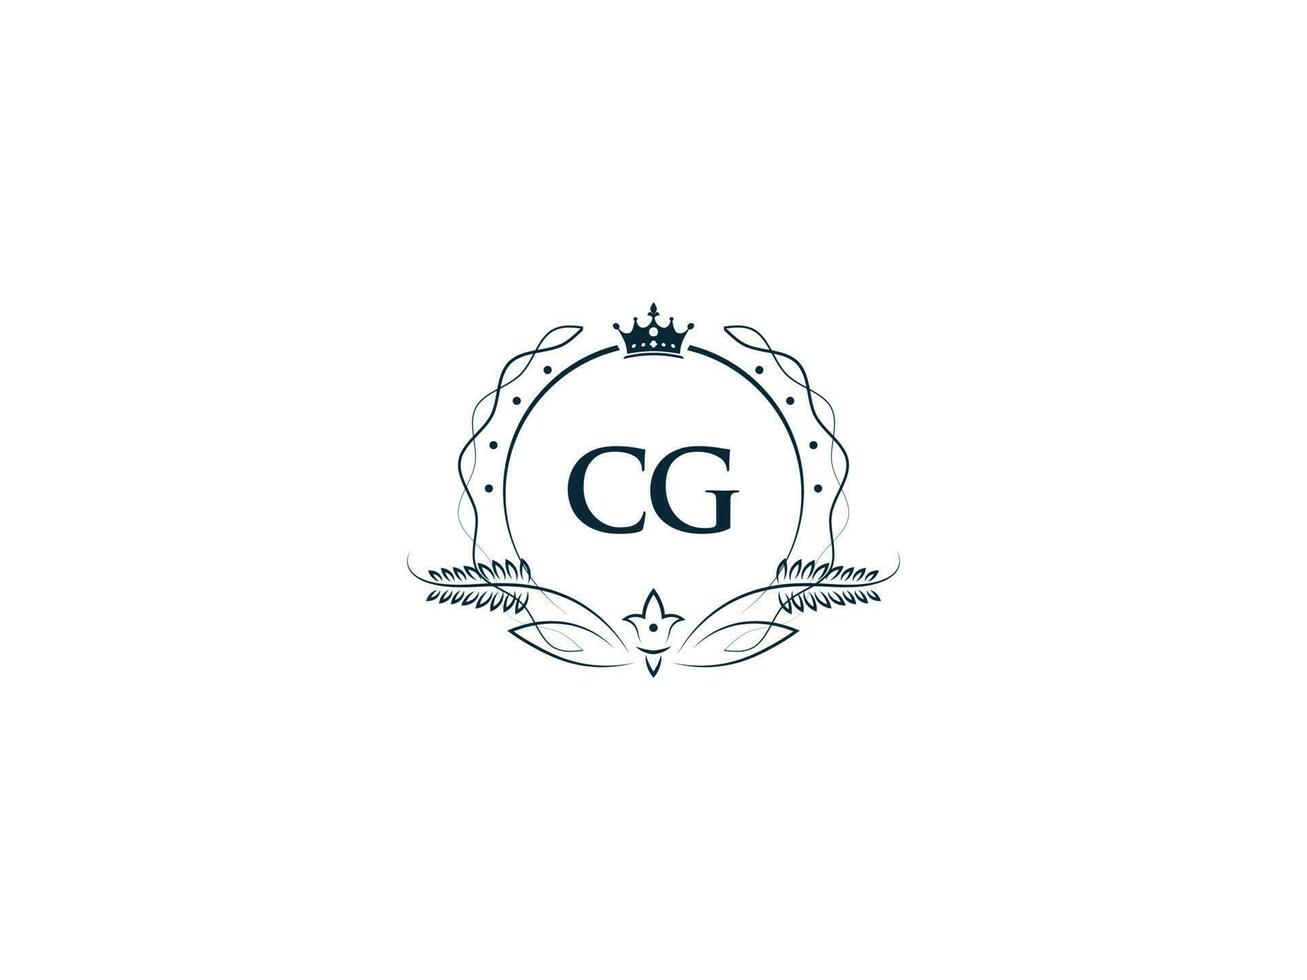 mínimo cg logo icono, creativo femenino corona cg GC letra logo imagen diseño vector